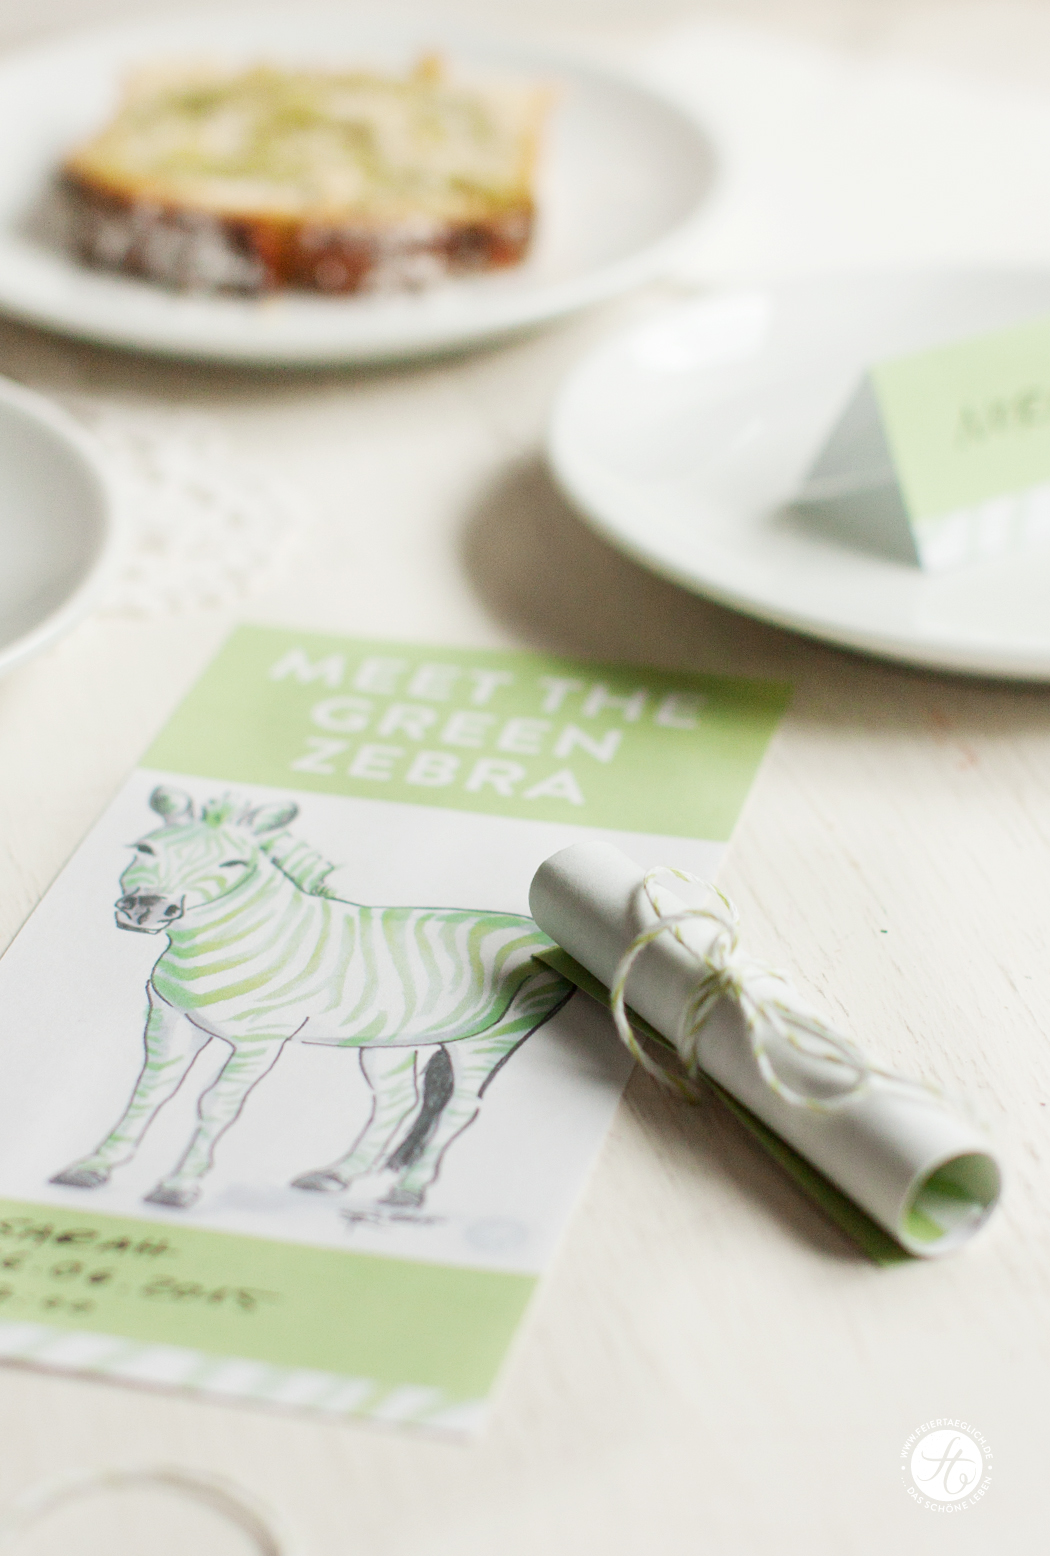 Einladung, Tischkarten, Green-Zebra-Party, Free Printables, Rezept für Kokos-Matcha-Green-Zebra Kuchen, Rührkuchen #meetthegreenzebra #ichbacksmir